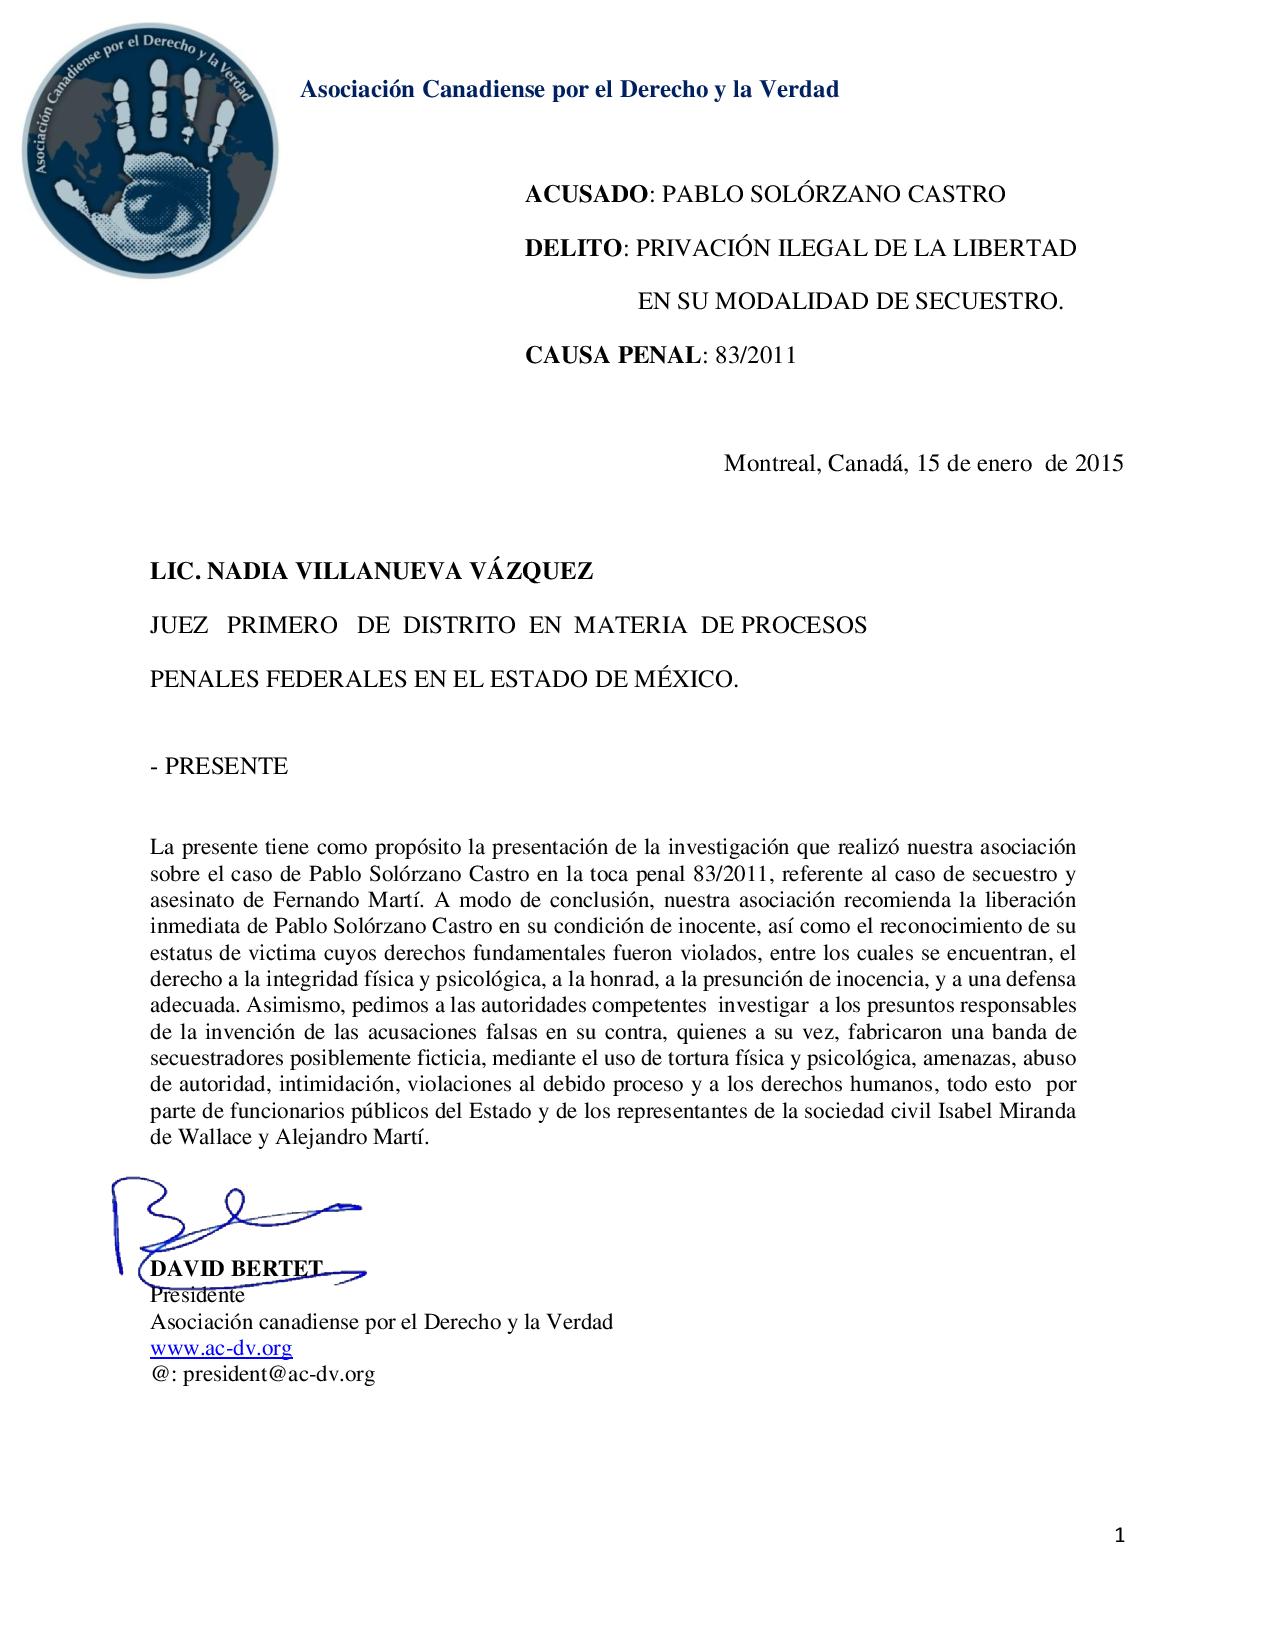 Carta dirigida a LICENCIADA NADIA VILLANUEVA VAZQUEZ 